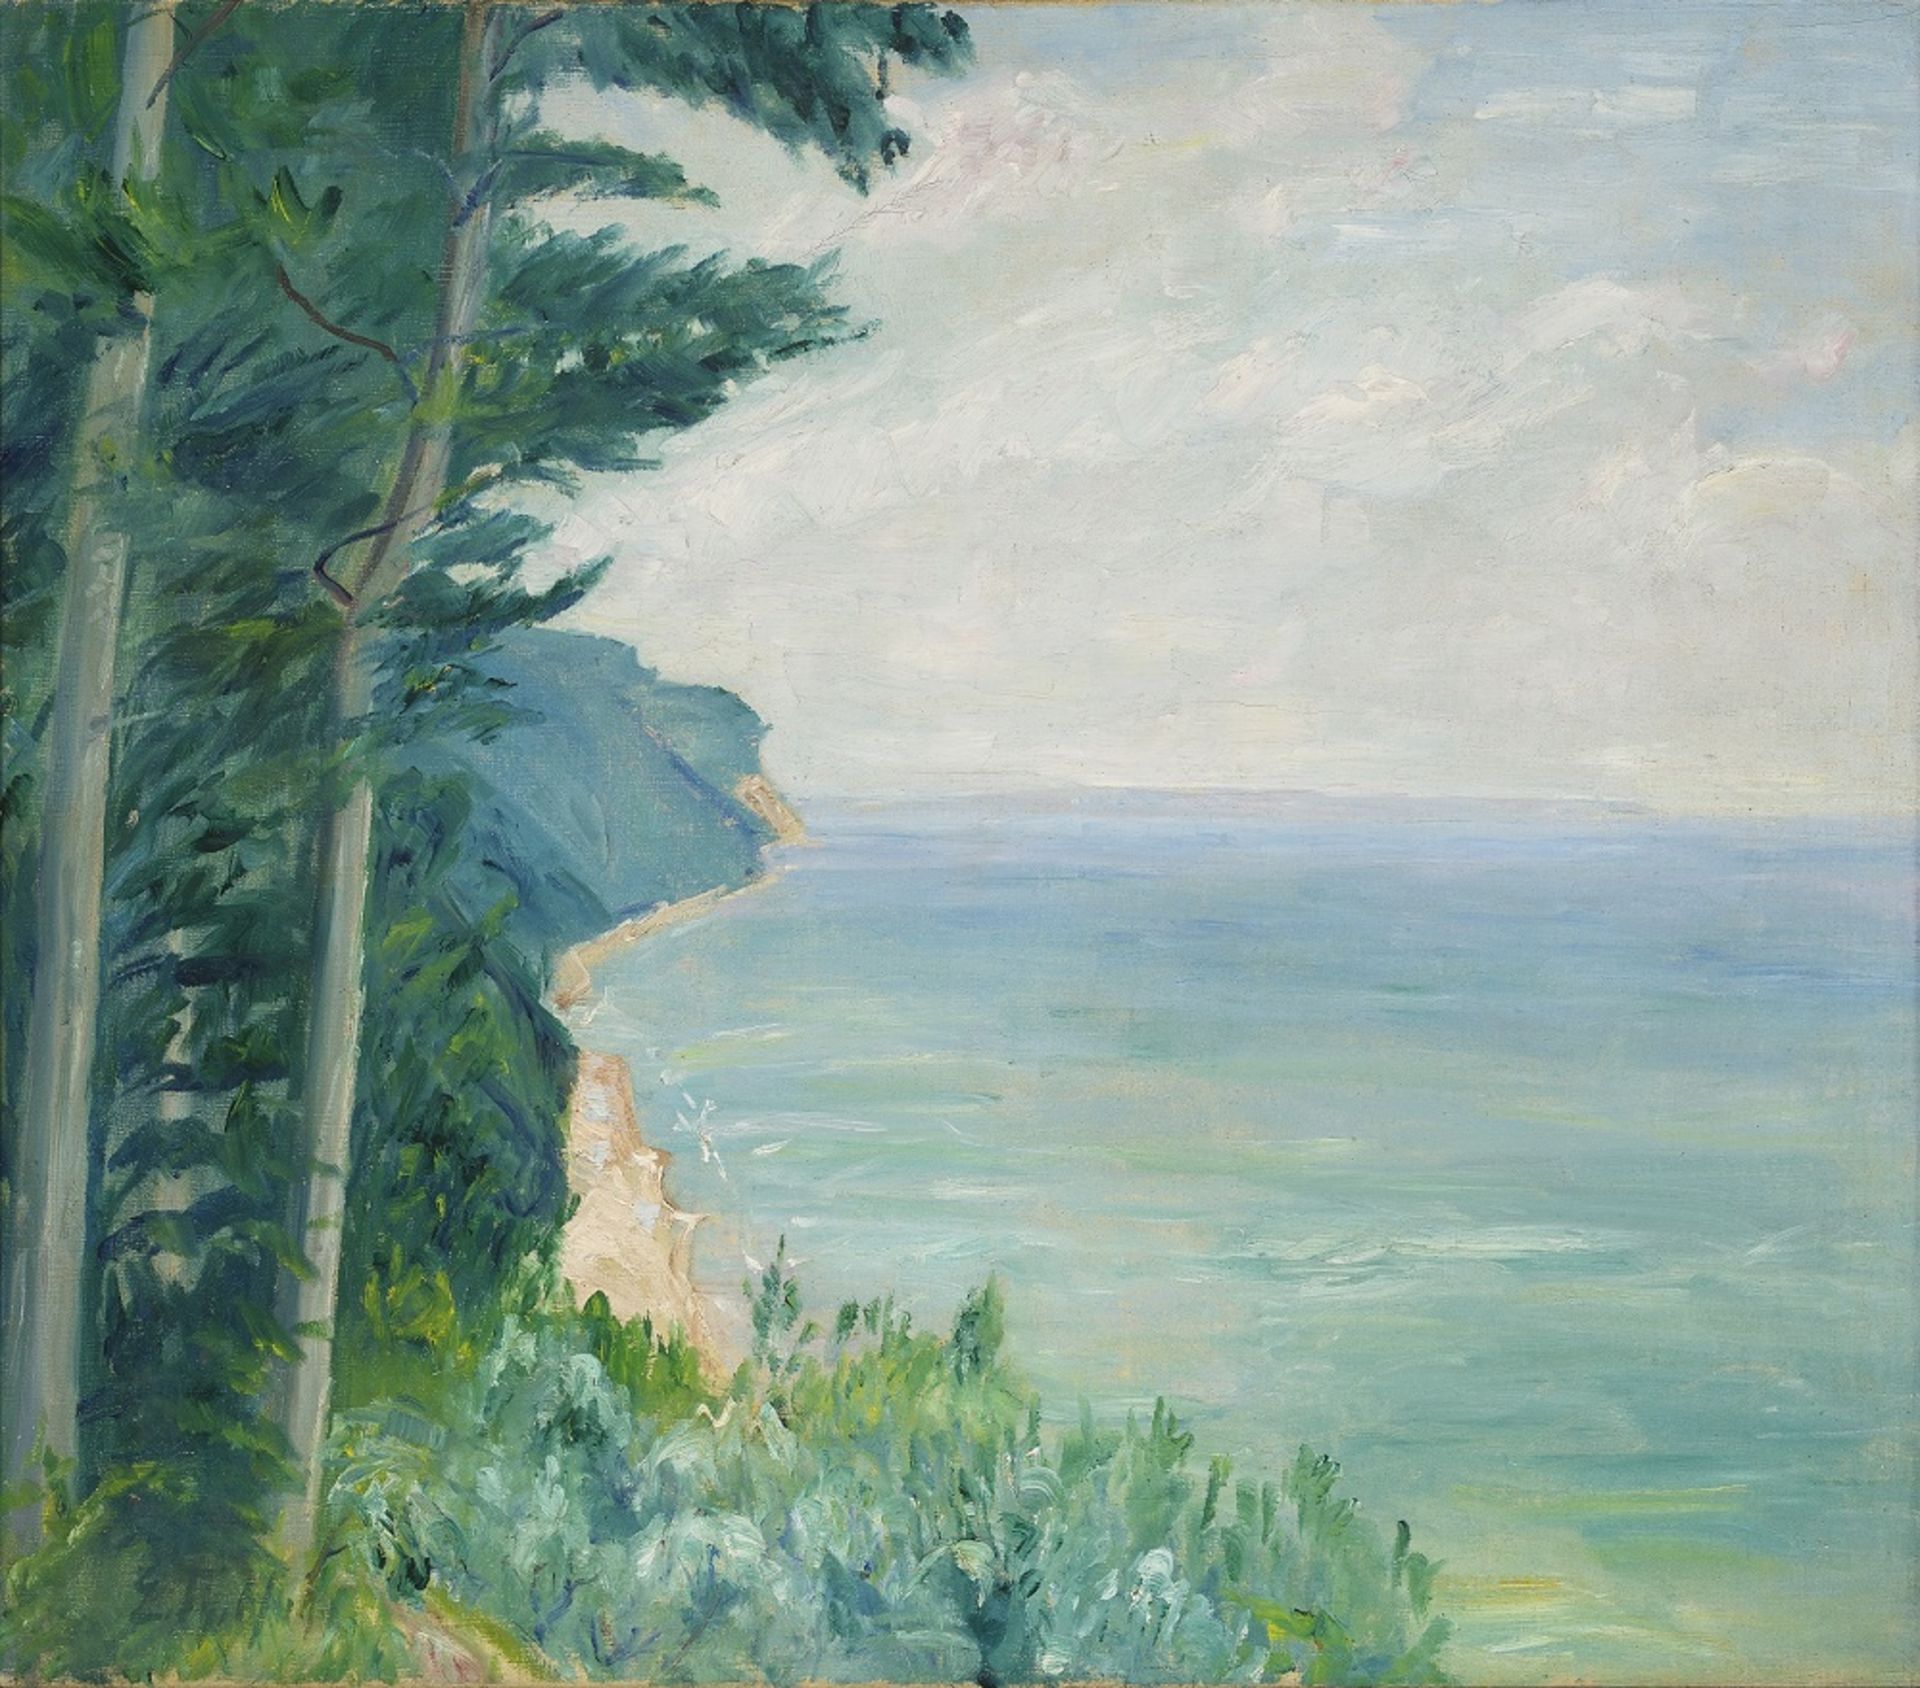 Holtz, Erich Theodor, Steilküste, Öl, 72 x 82 cm, sign.